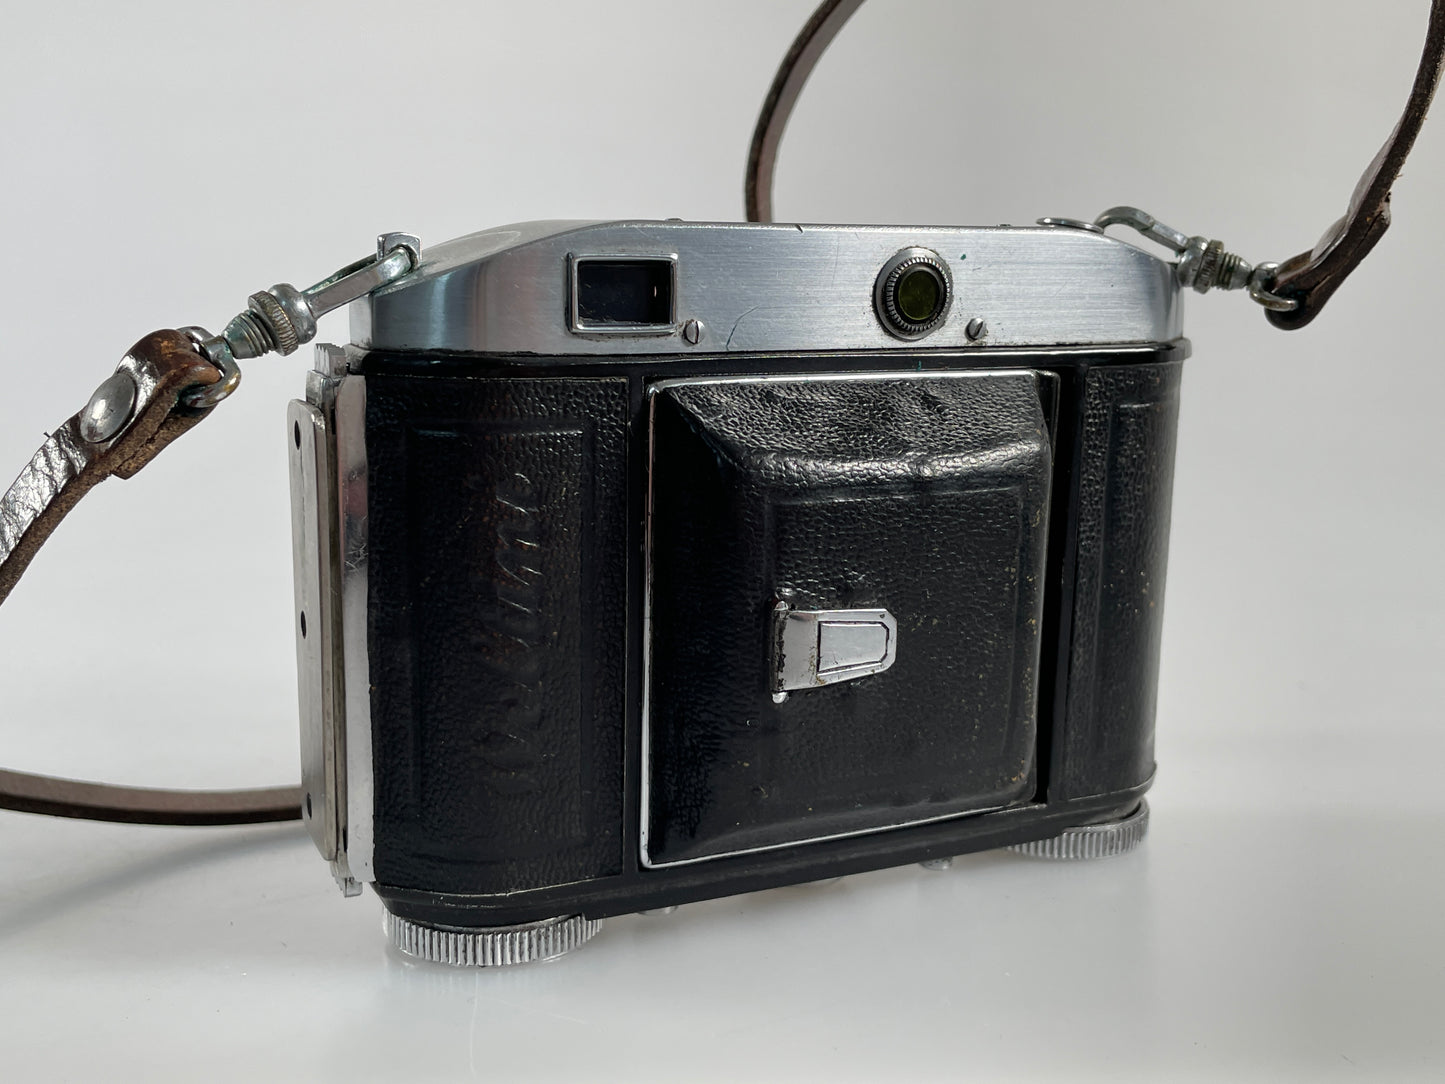 Welta Weltini RARE camera with Leica Leitz Elmar 5cm 50mm f3.5 SN: 460077 Rangefinder